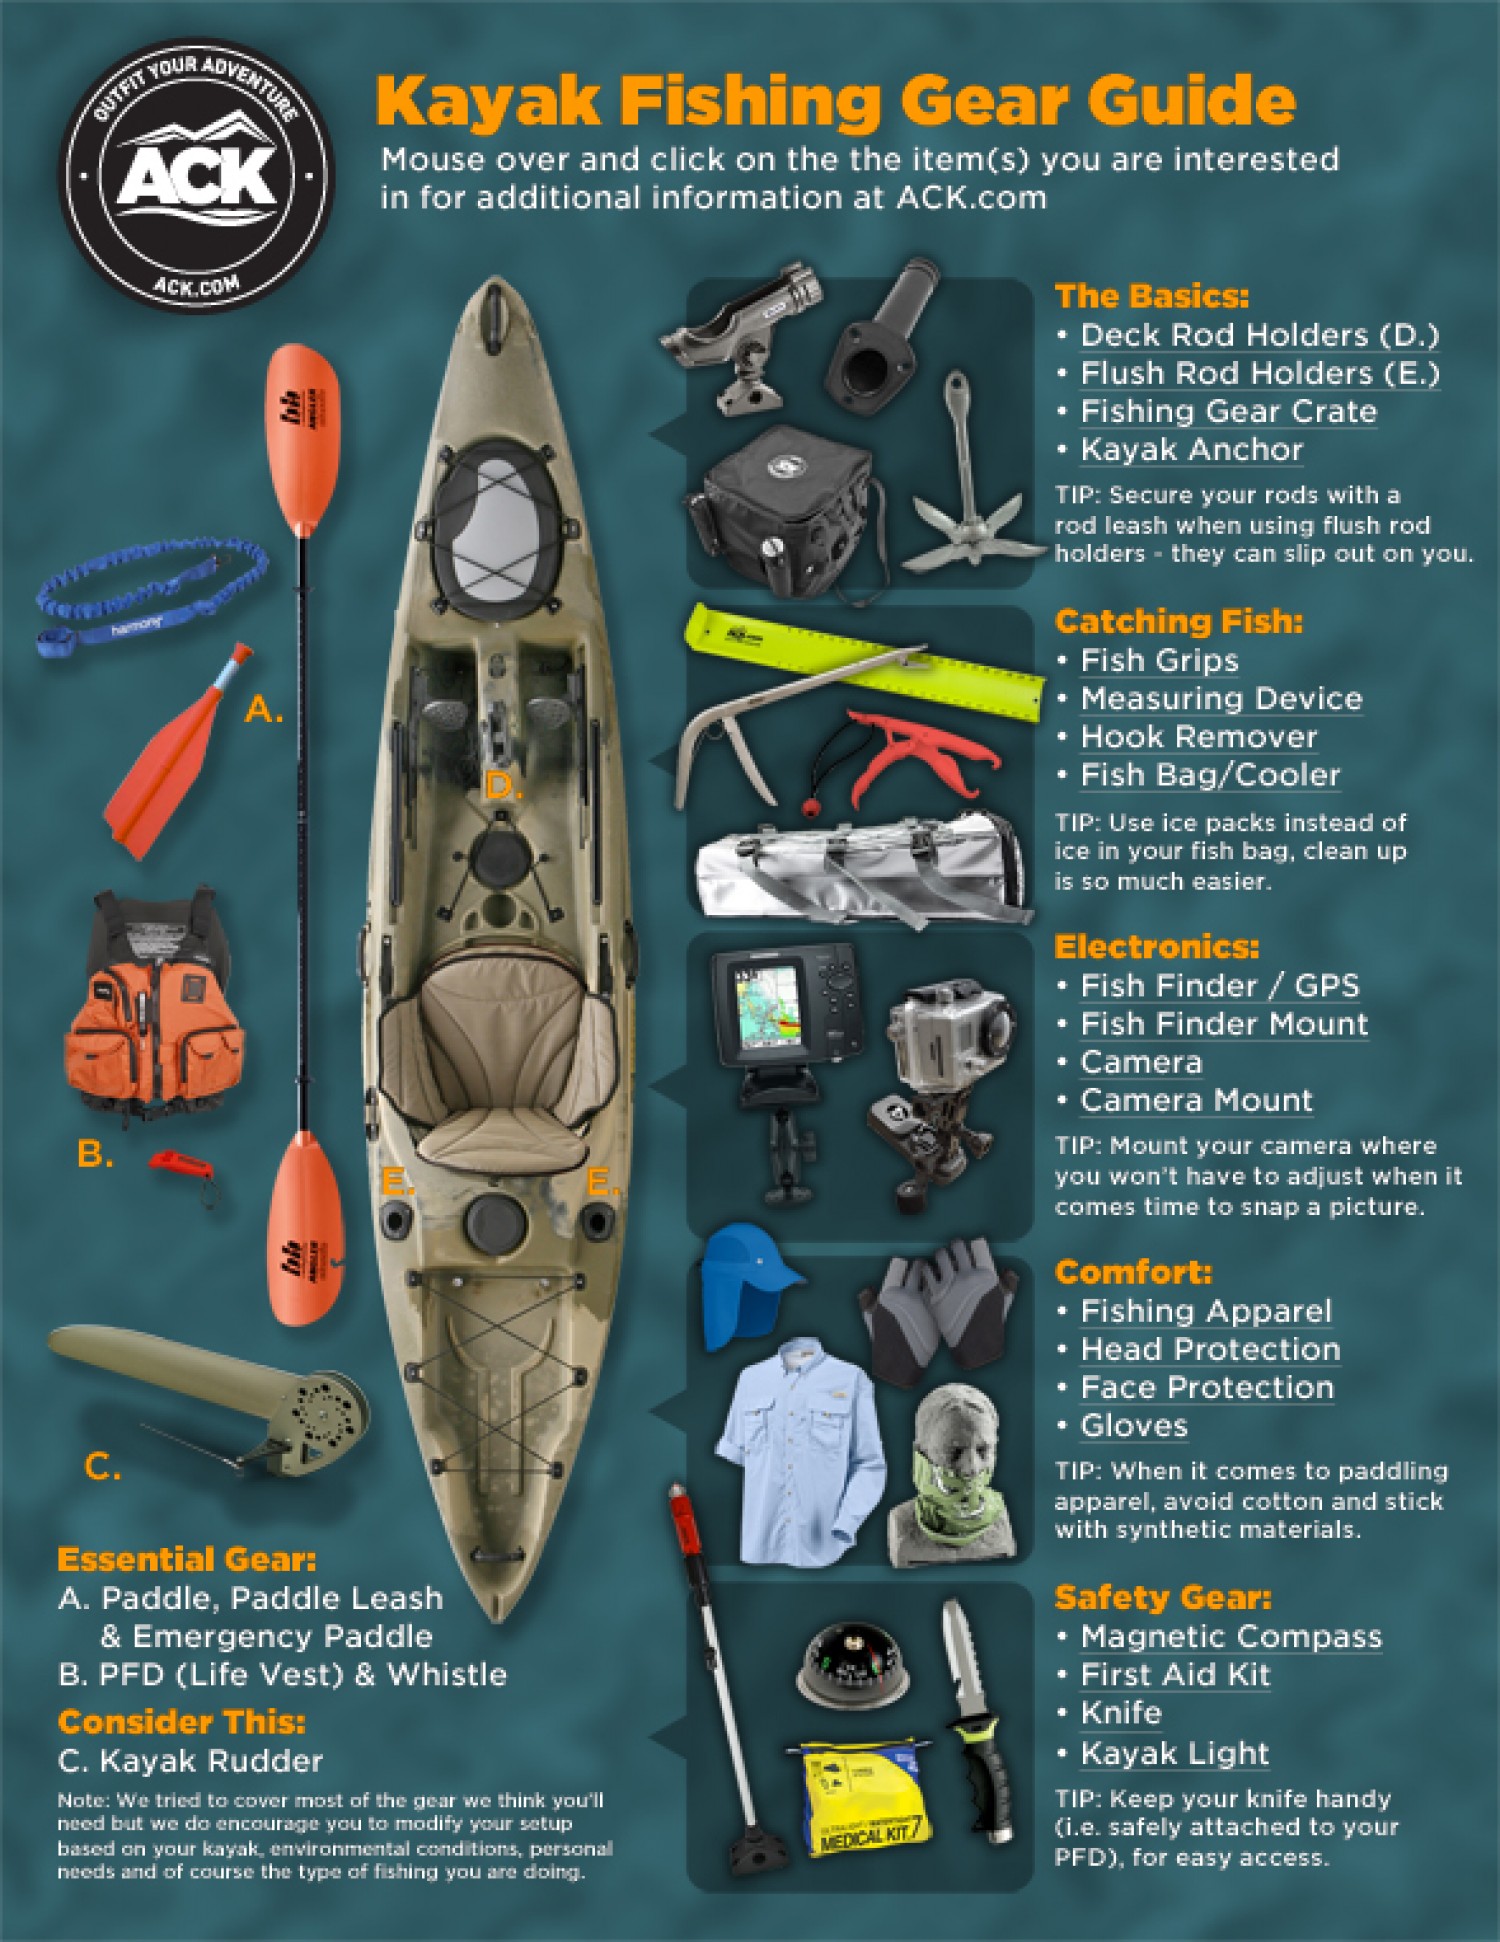 ACK Kayak Fishing Gear Guide: A Visual Presentation | Visual.ly